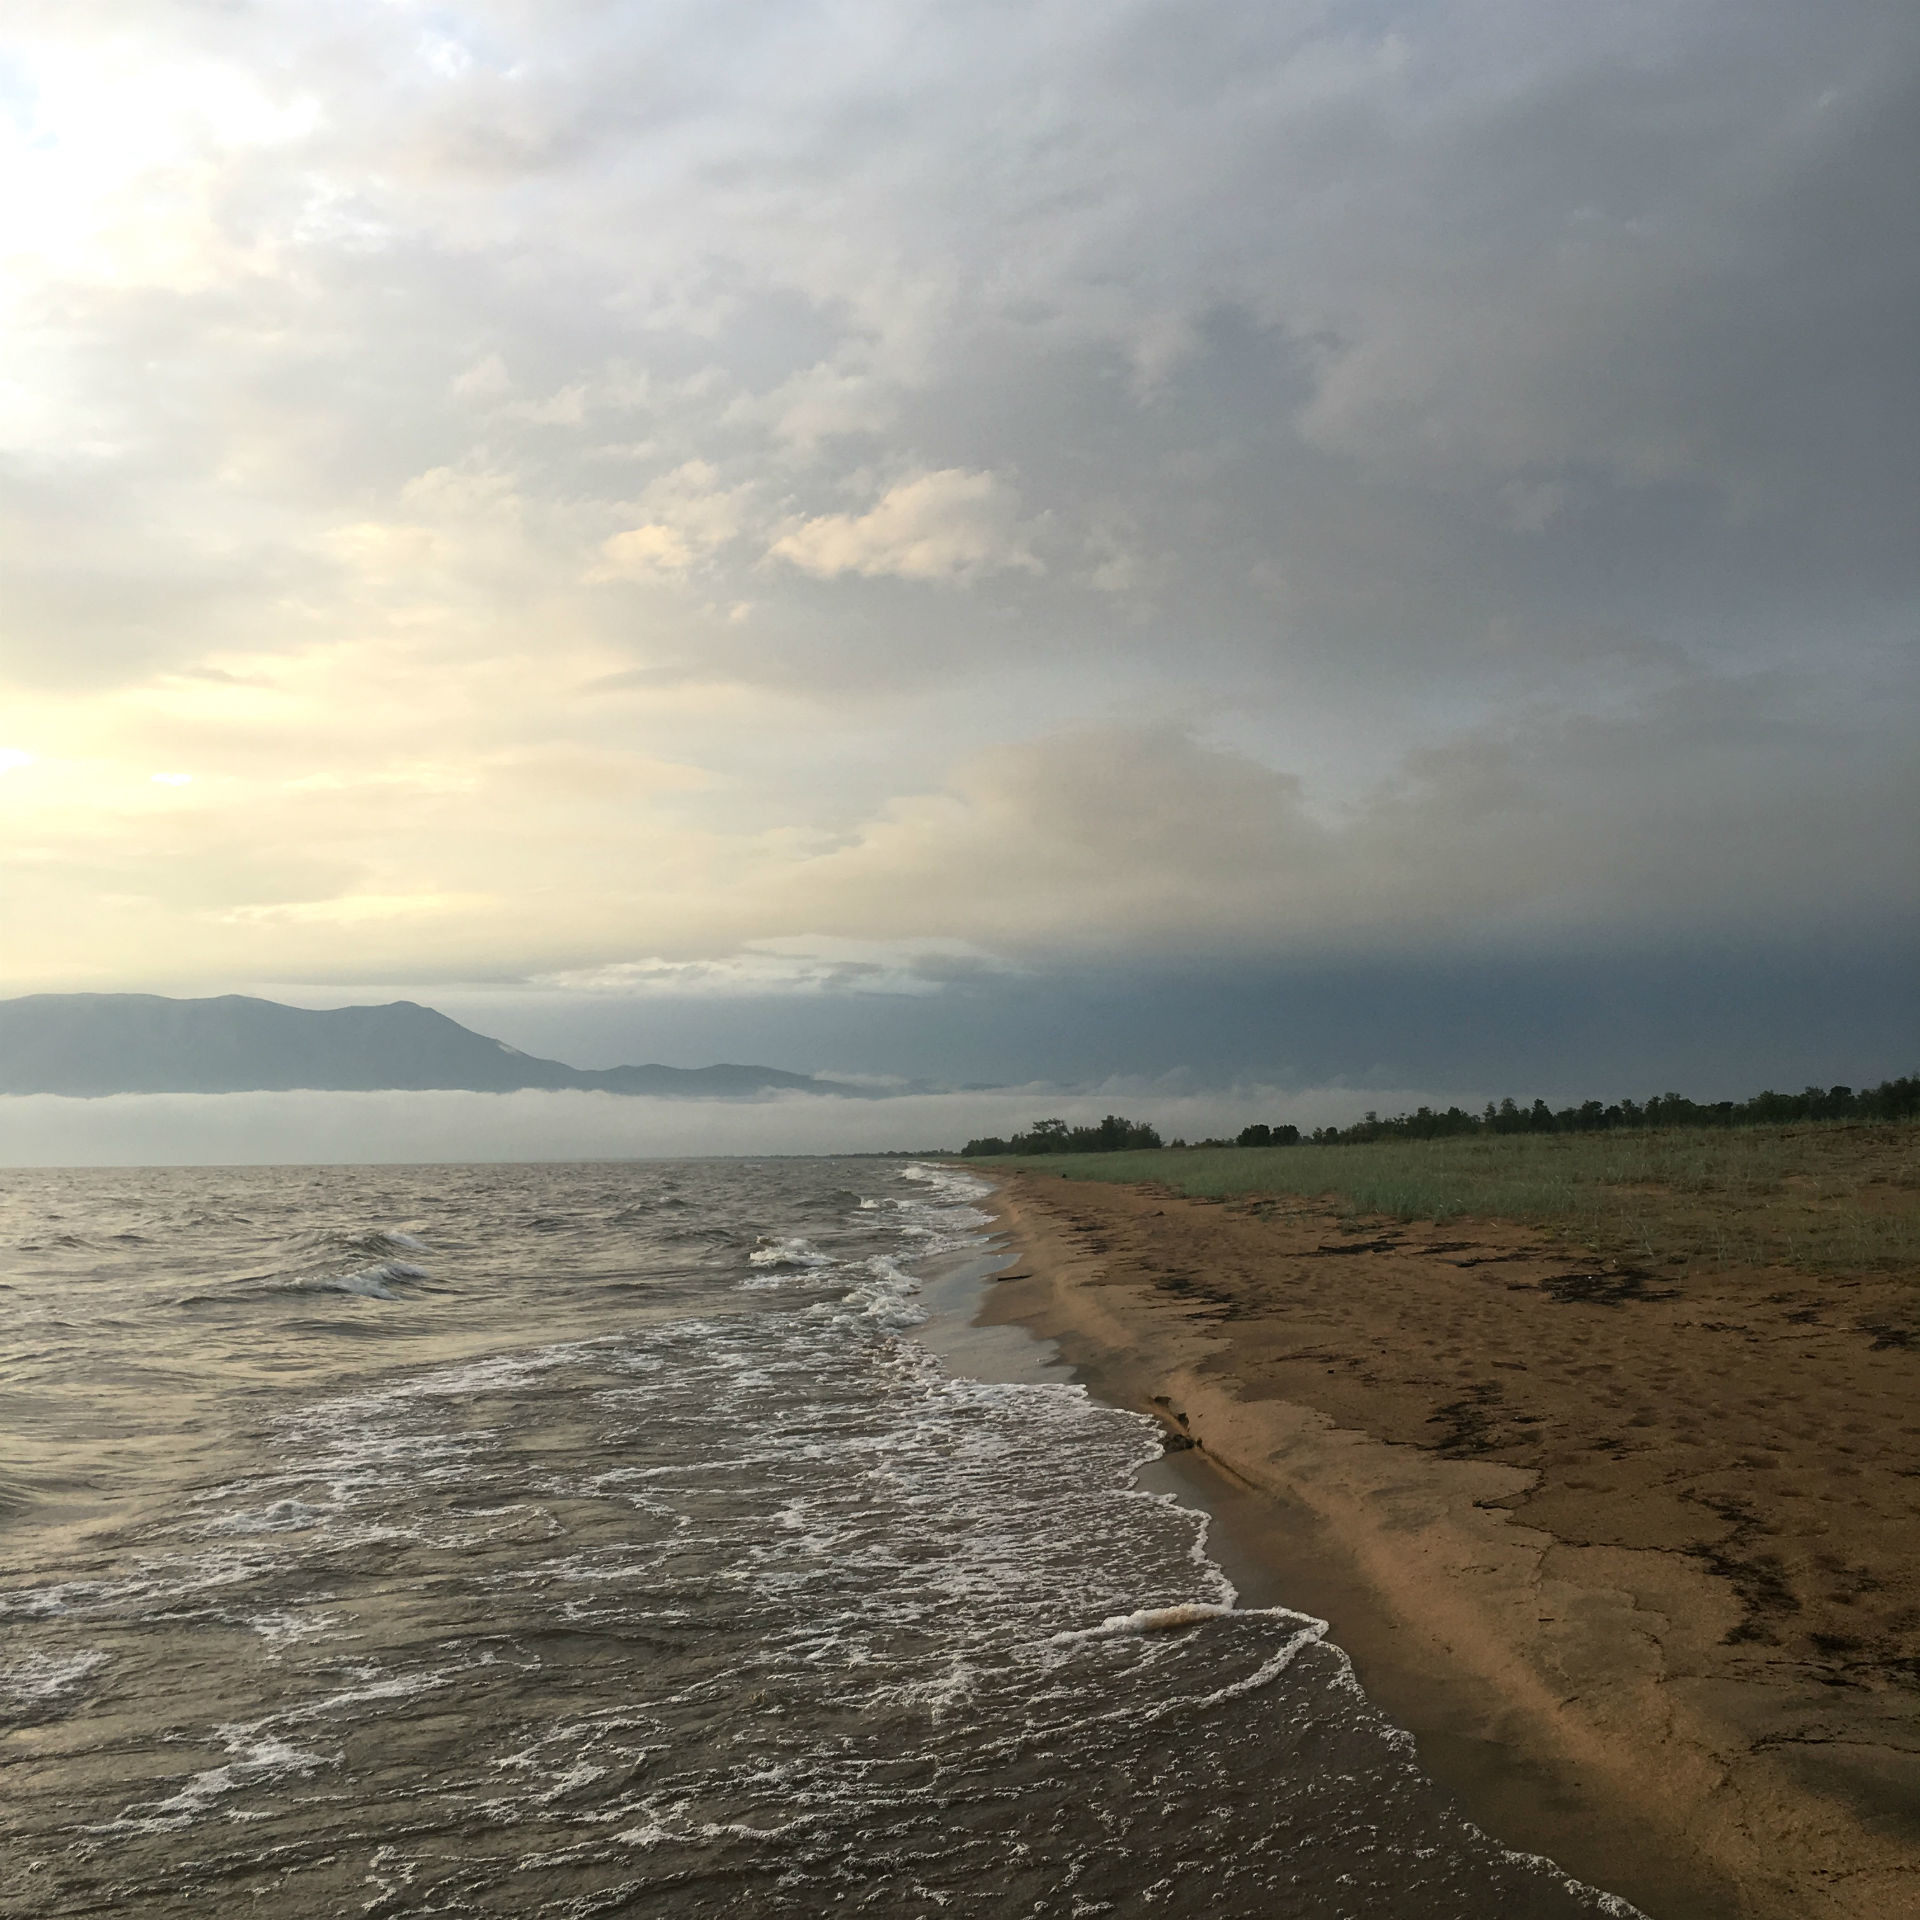 Le vaste rivage sauvage du Baïkal, à l'horizon embrumé.